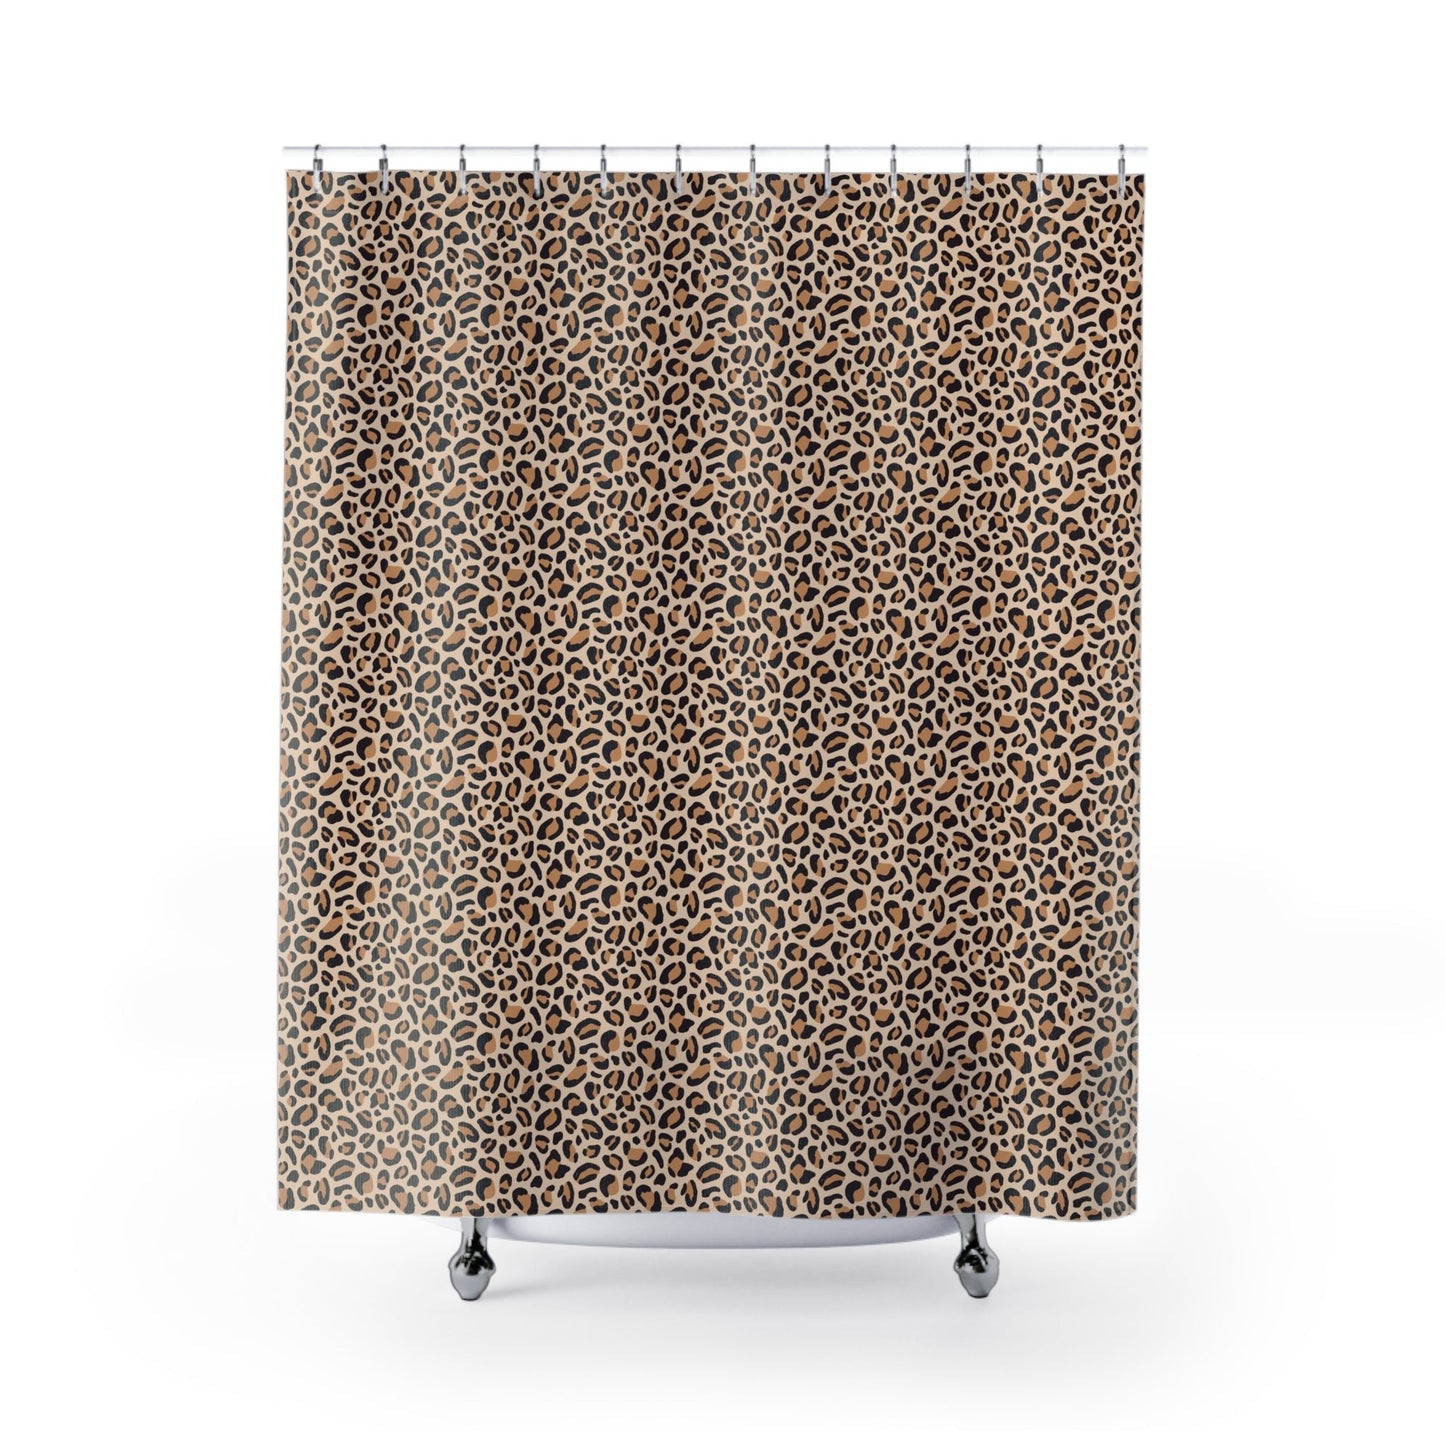 Leopard Print Shower Curtains - Home Decor - Epileptic Al’s Shop